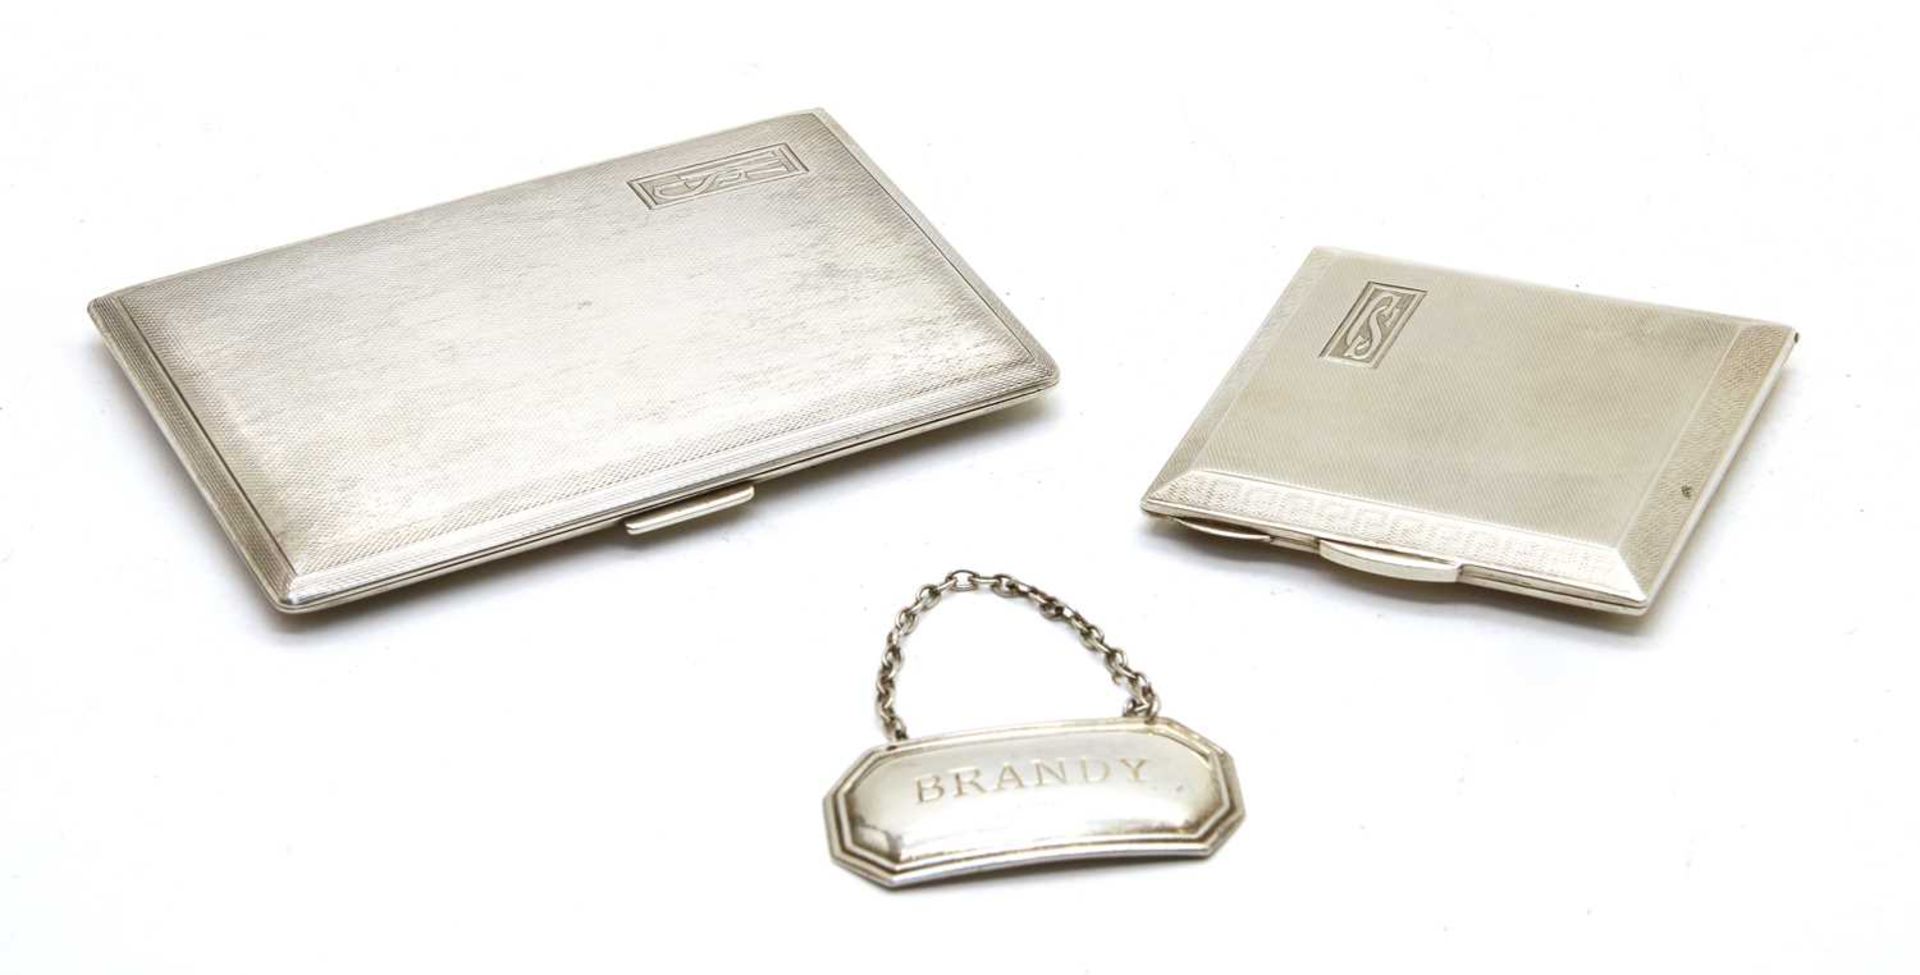 A mid 20th century silver cigarette case,